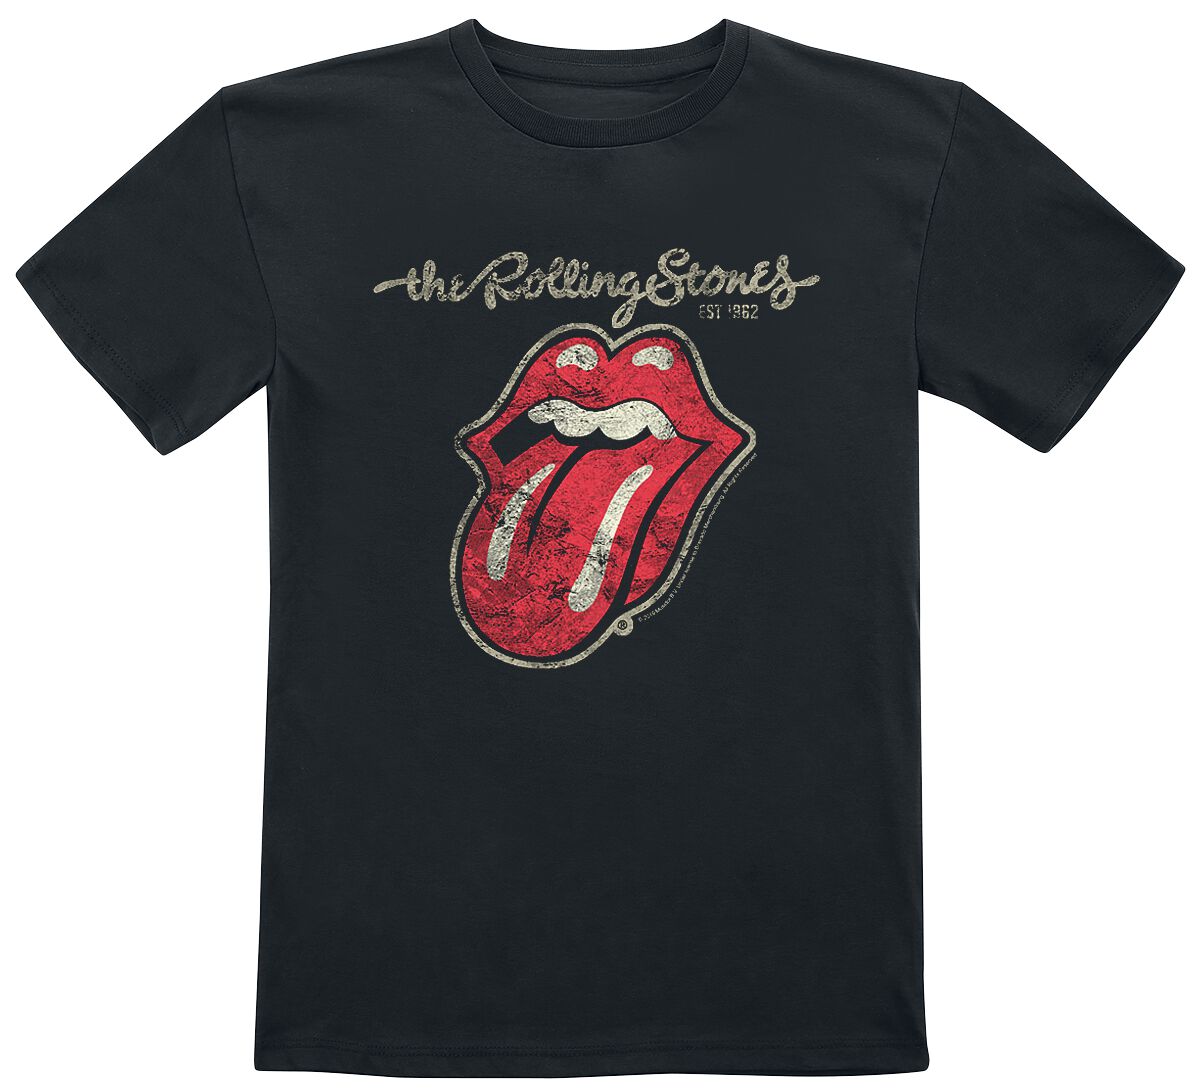 The Rolling Stones T-Shirt für Kleinkinder - Metal-Kids - Classic Tongue - für Mädchen & Jungen - schwarz  - Lizenziertes Merchandise!